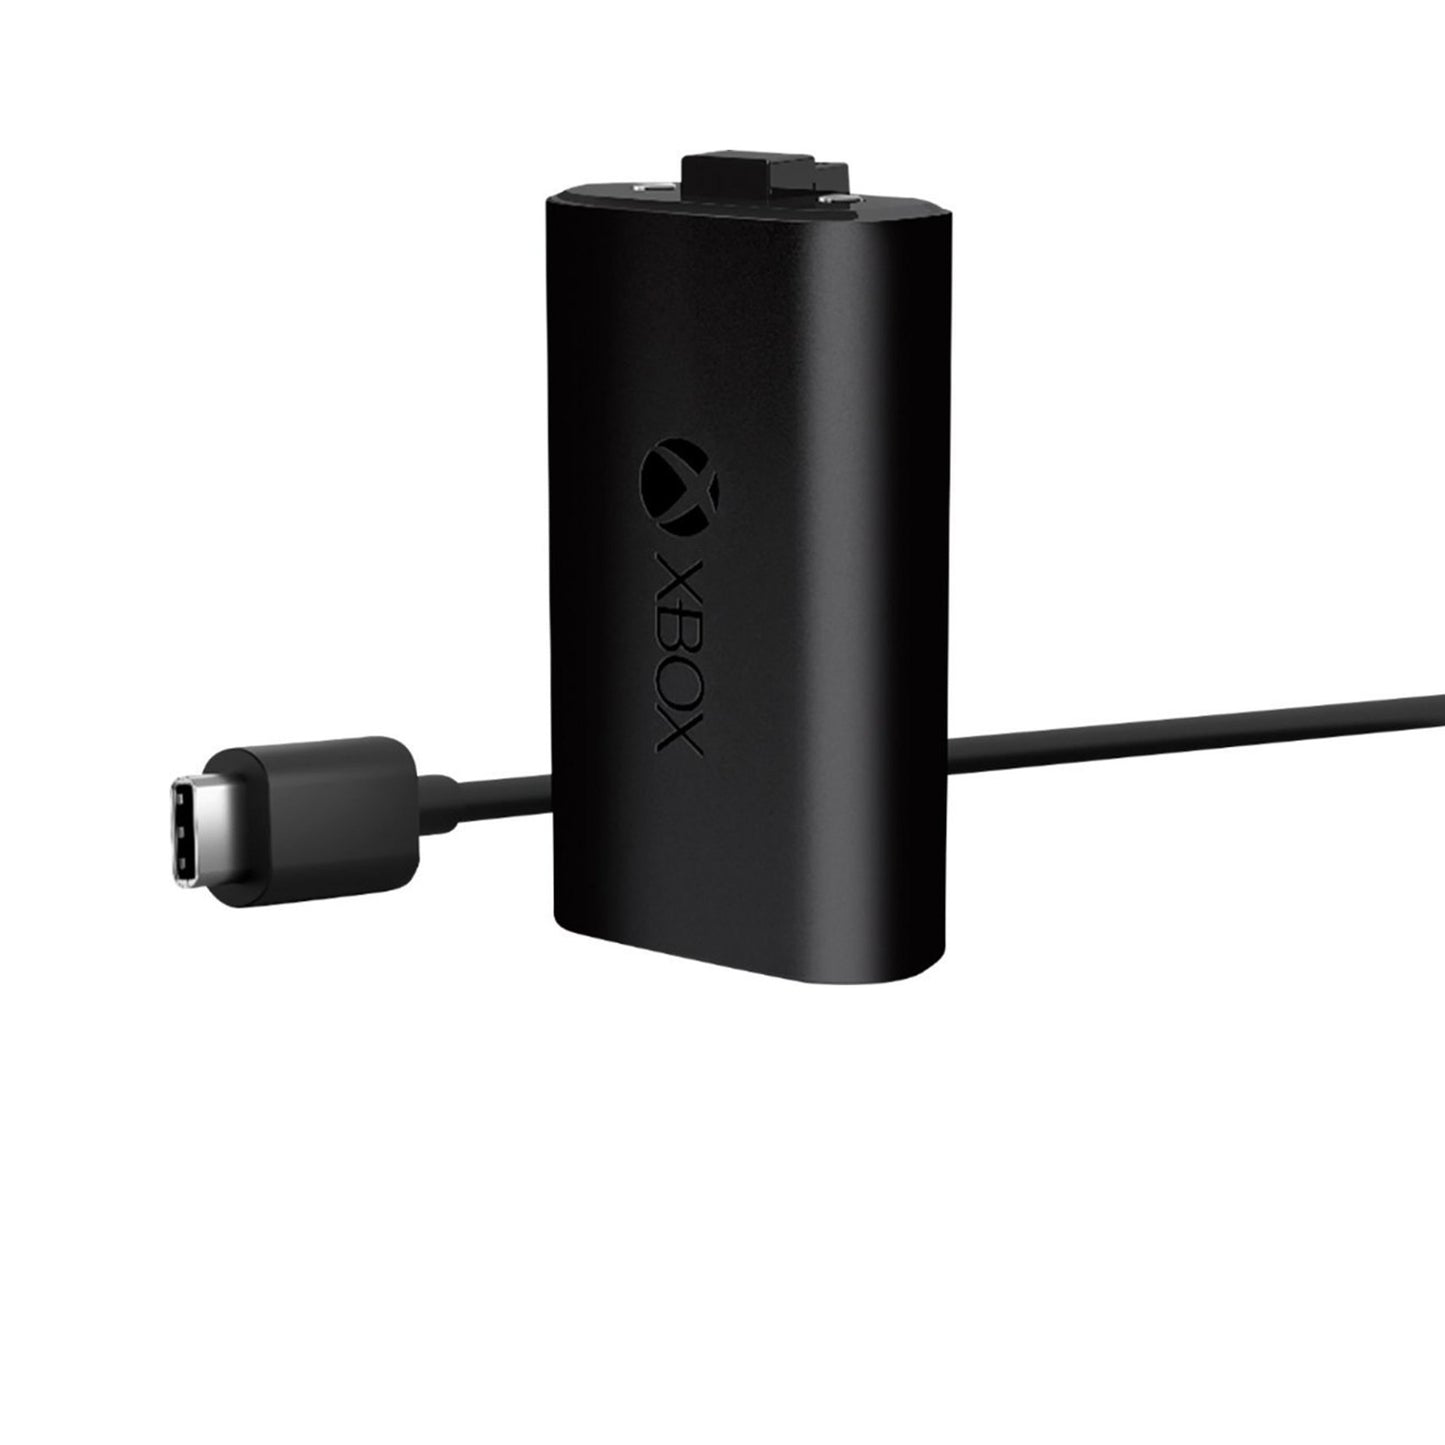 مايكروسوفت - بطارية قابلة للشحن + كابل USB-C لأجهزة Xbox Series X وXbox Series S - أسود 